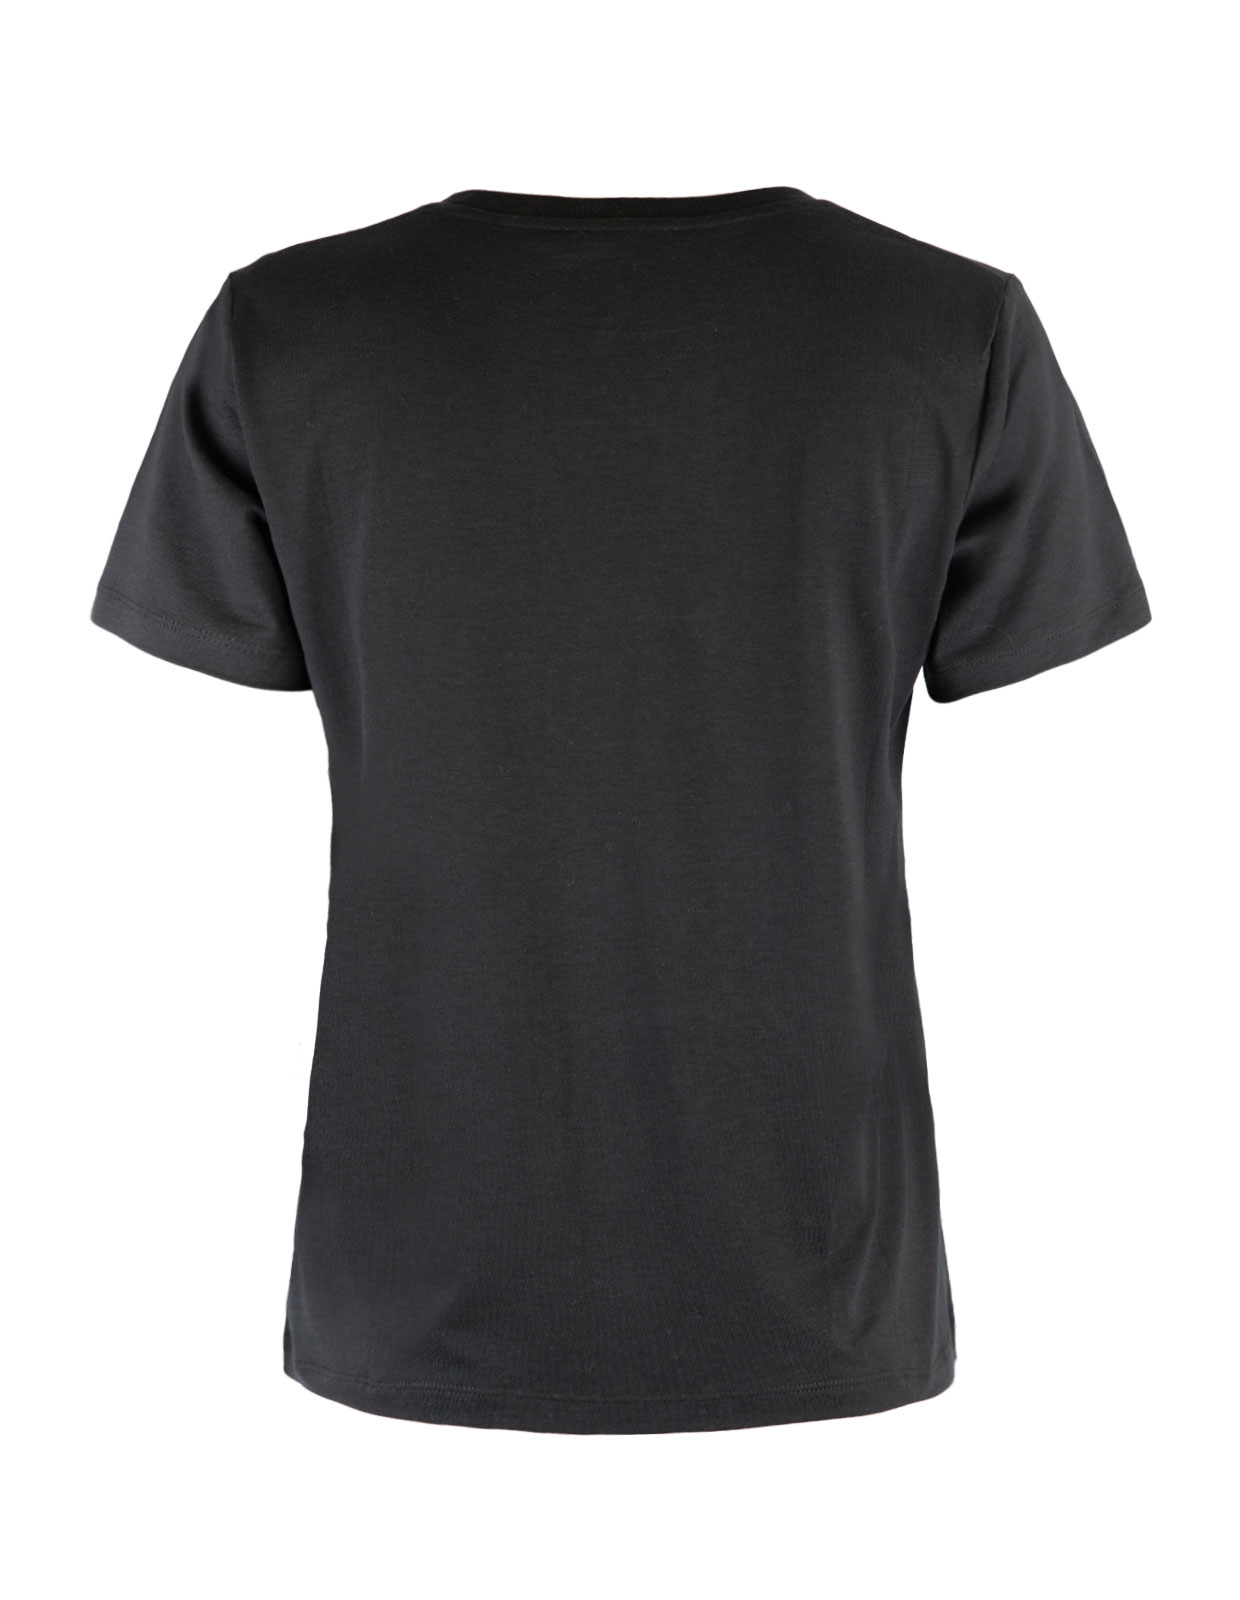 Ninja Logo T-Shirt Black